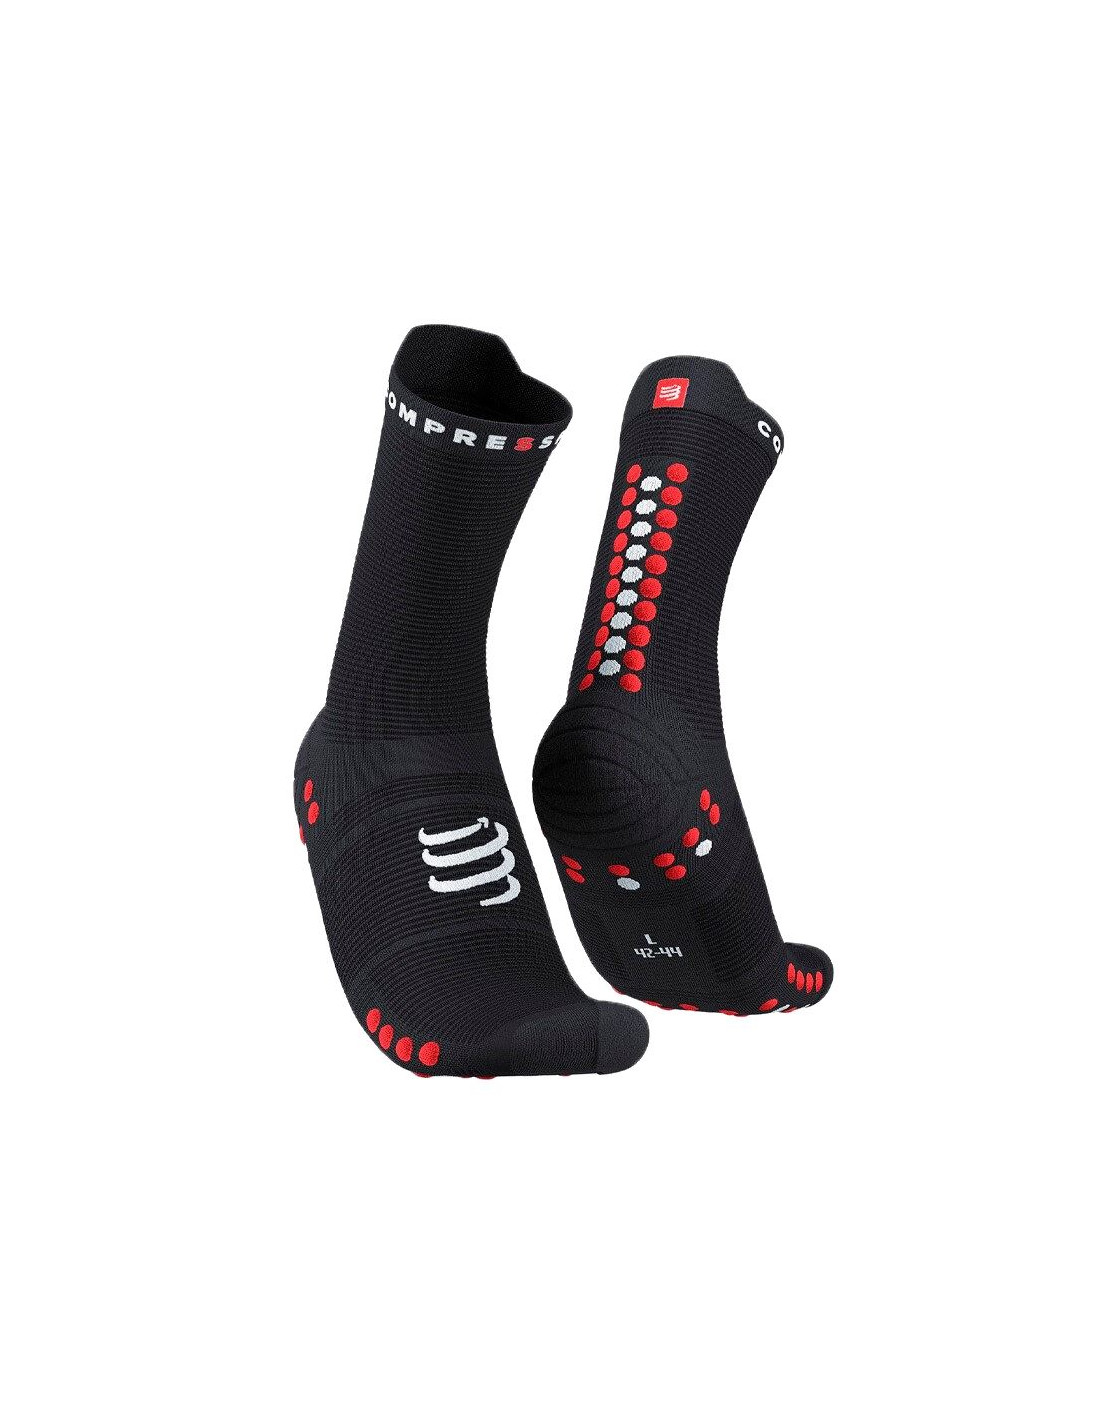 Calcetines de running compressports pro racing socks v4.0 black